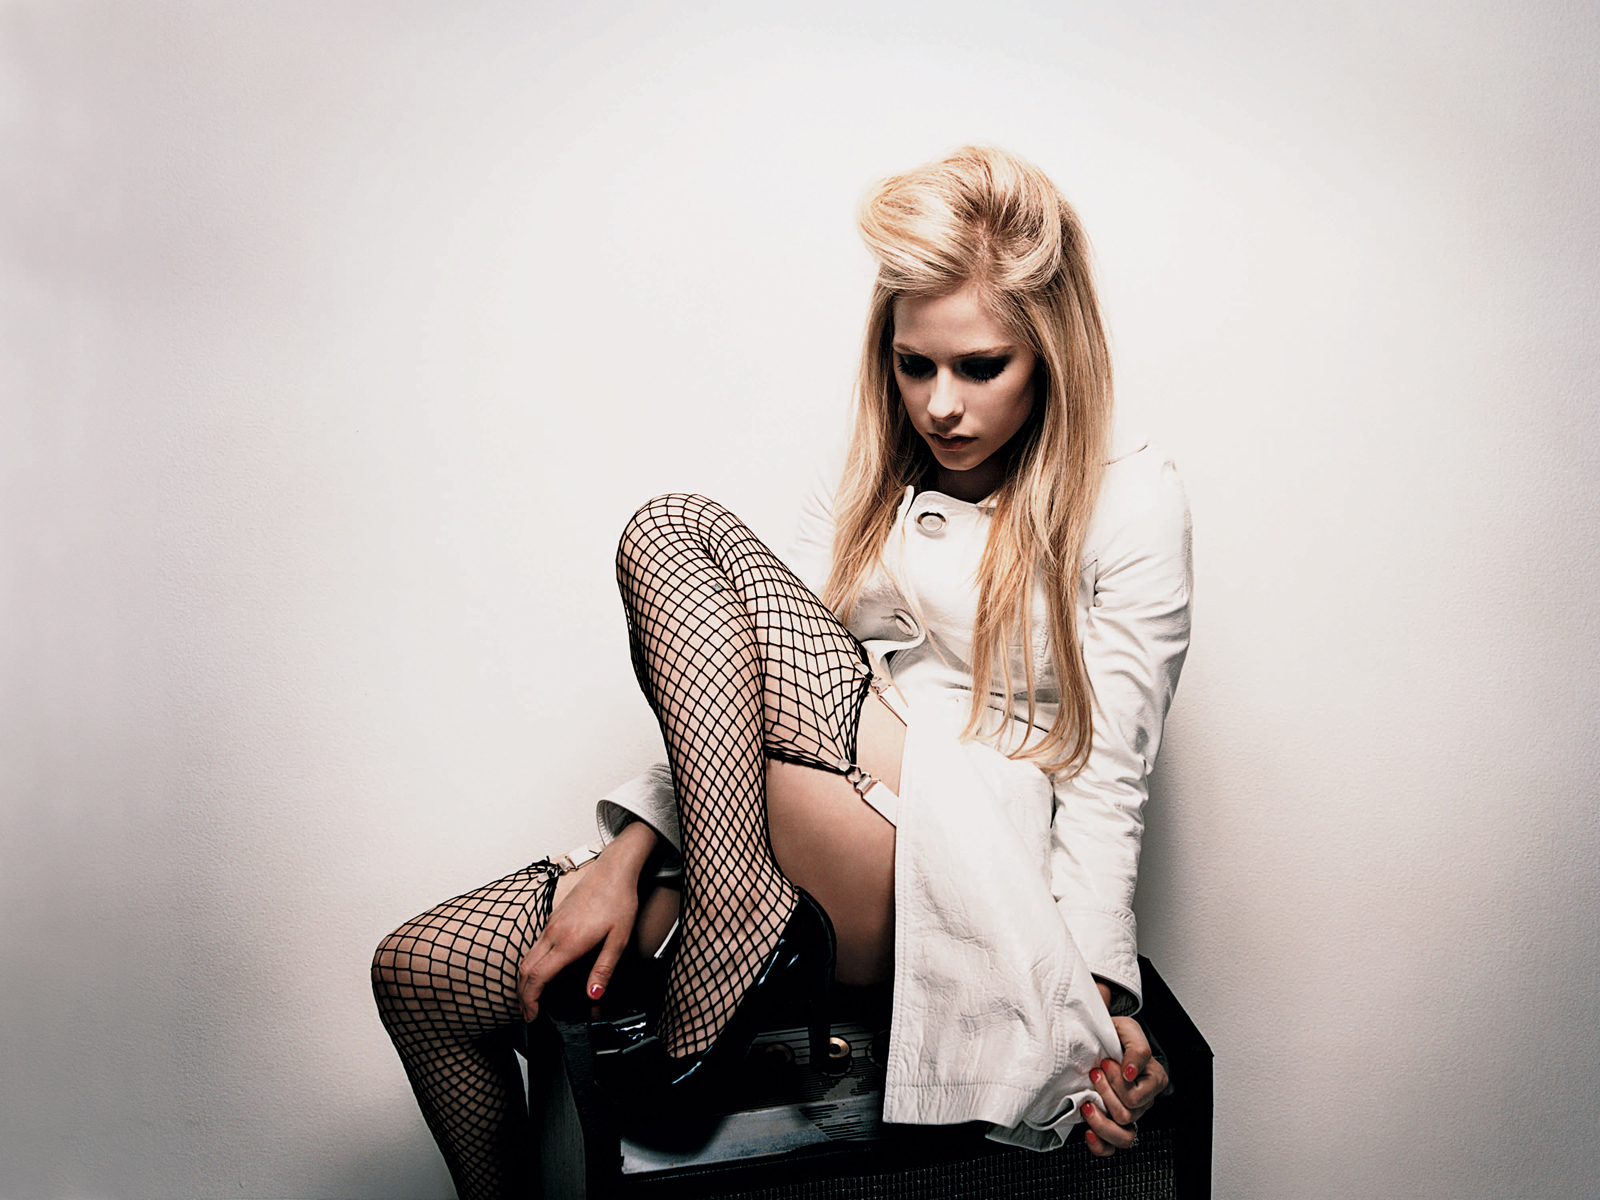 Fond d'ecran Avril Lavigne bas